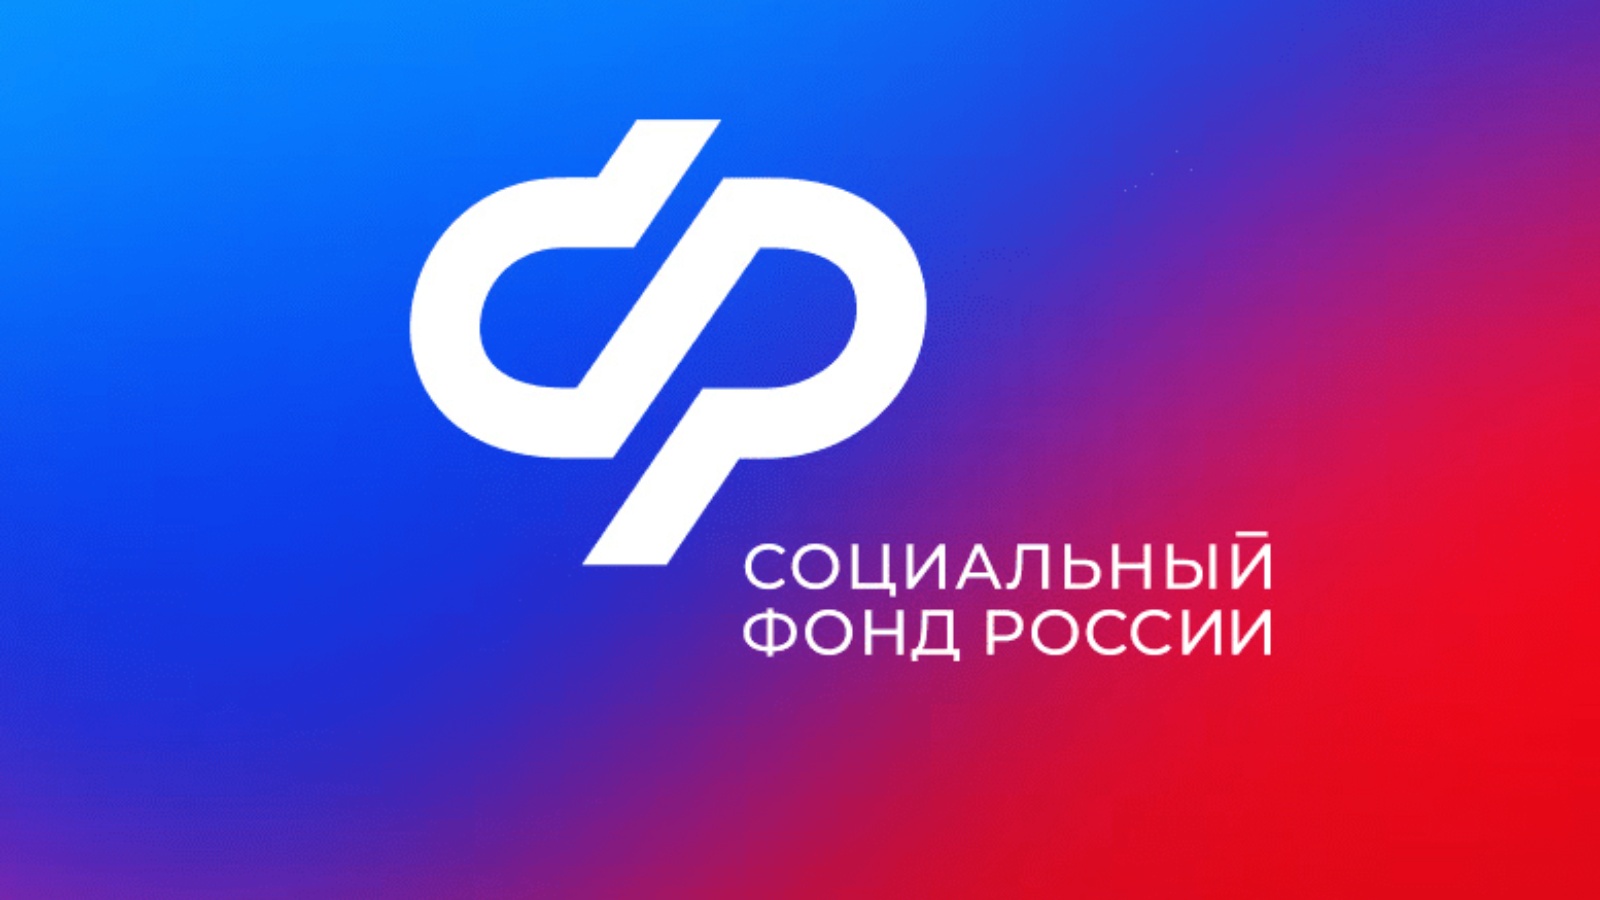 Более 66 тысяч жителей Мордовии получили консультации по телефону контакт-центра регионального Отделения Социального фонда России  с начала года.